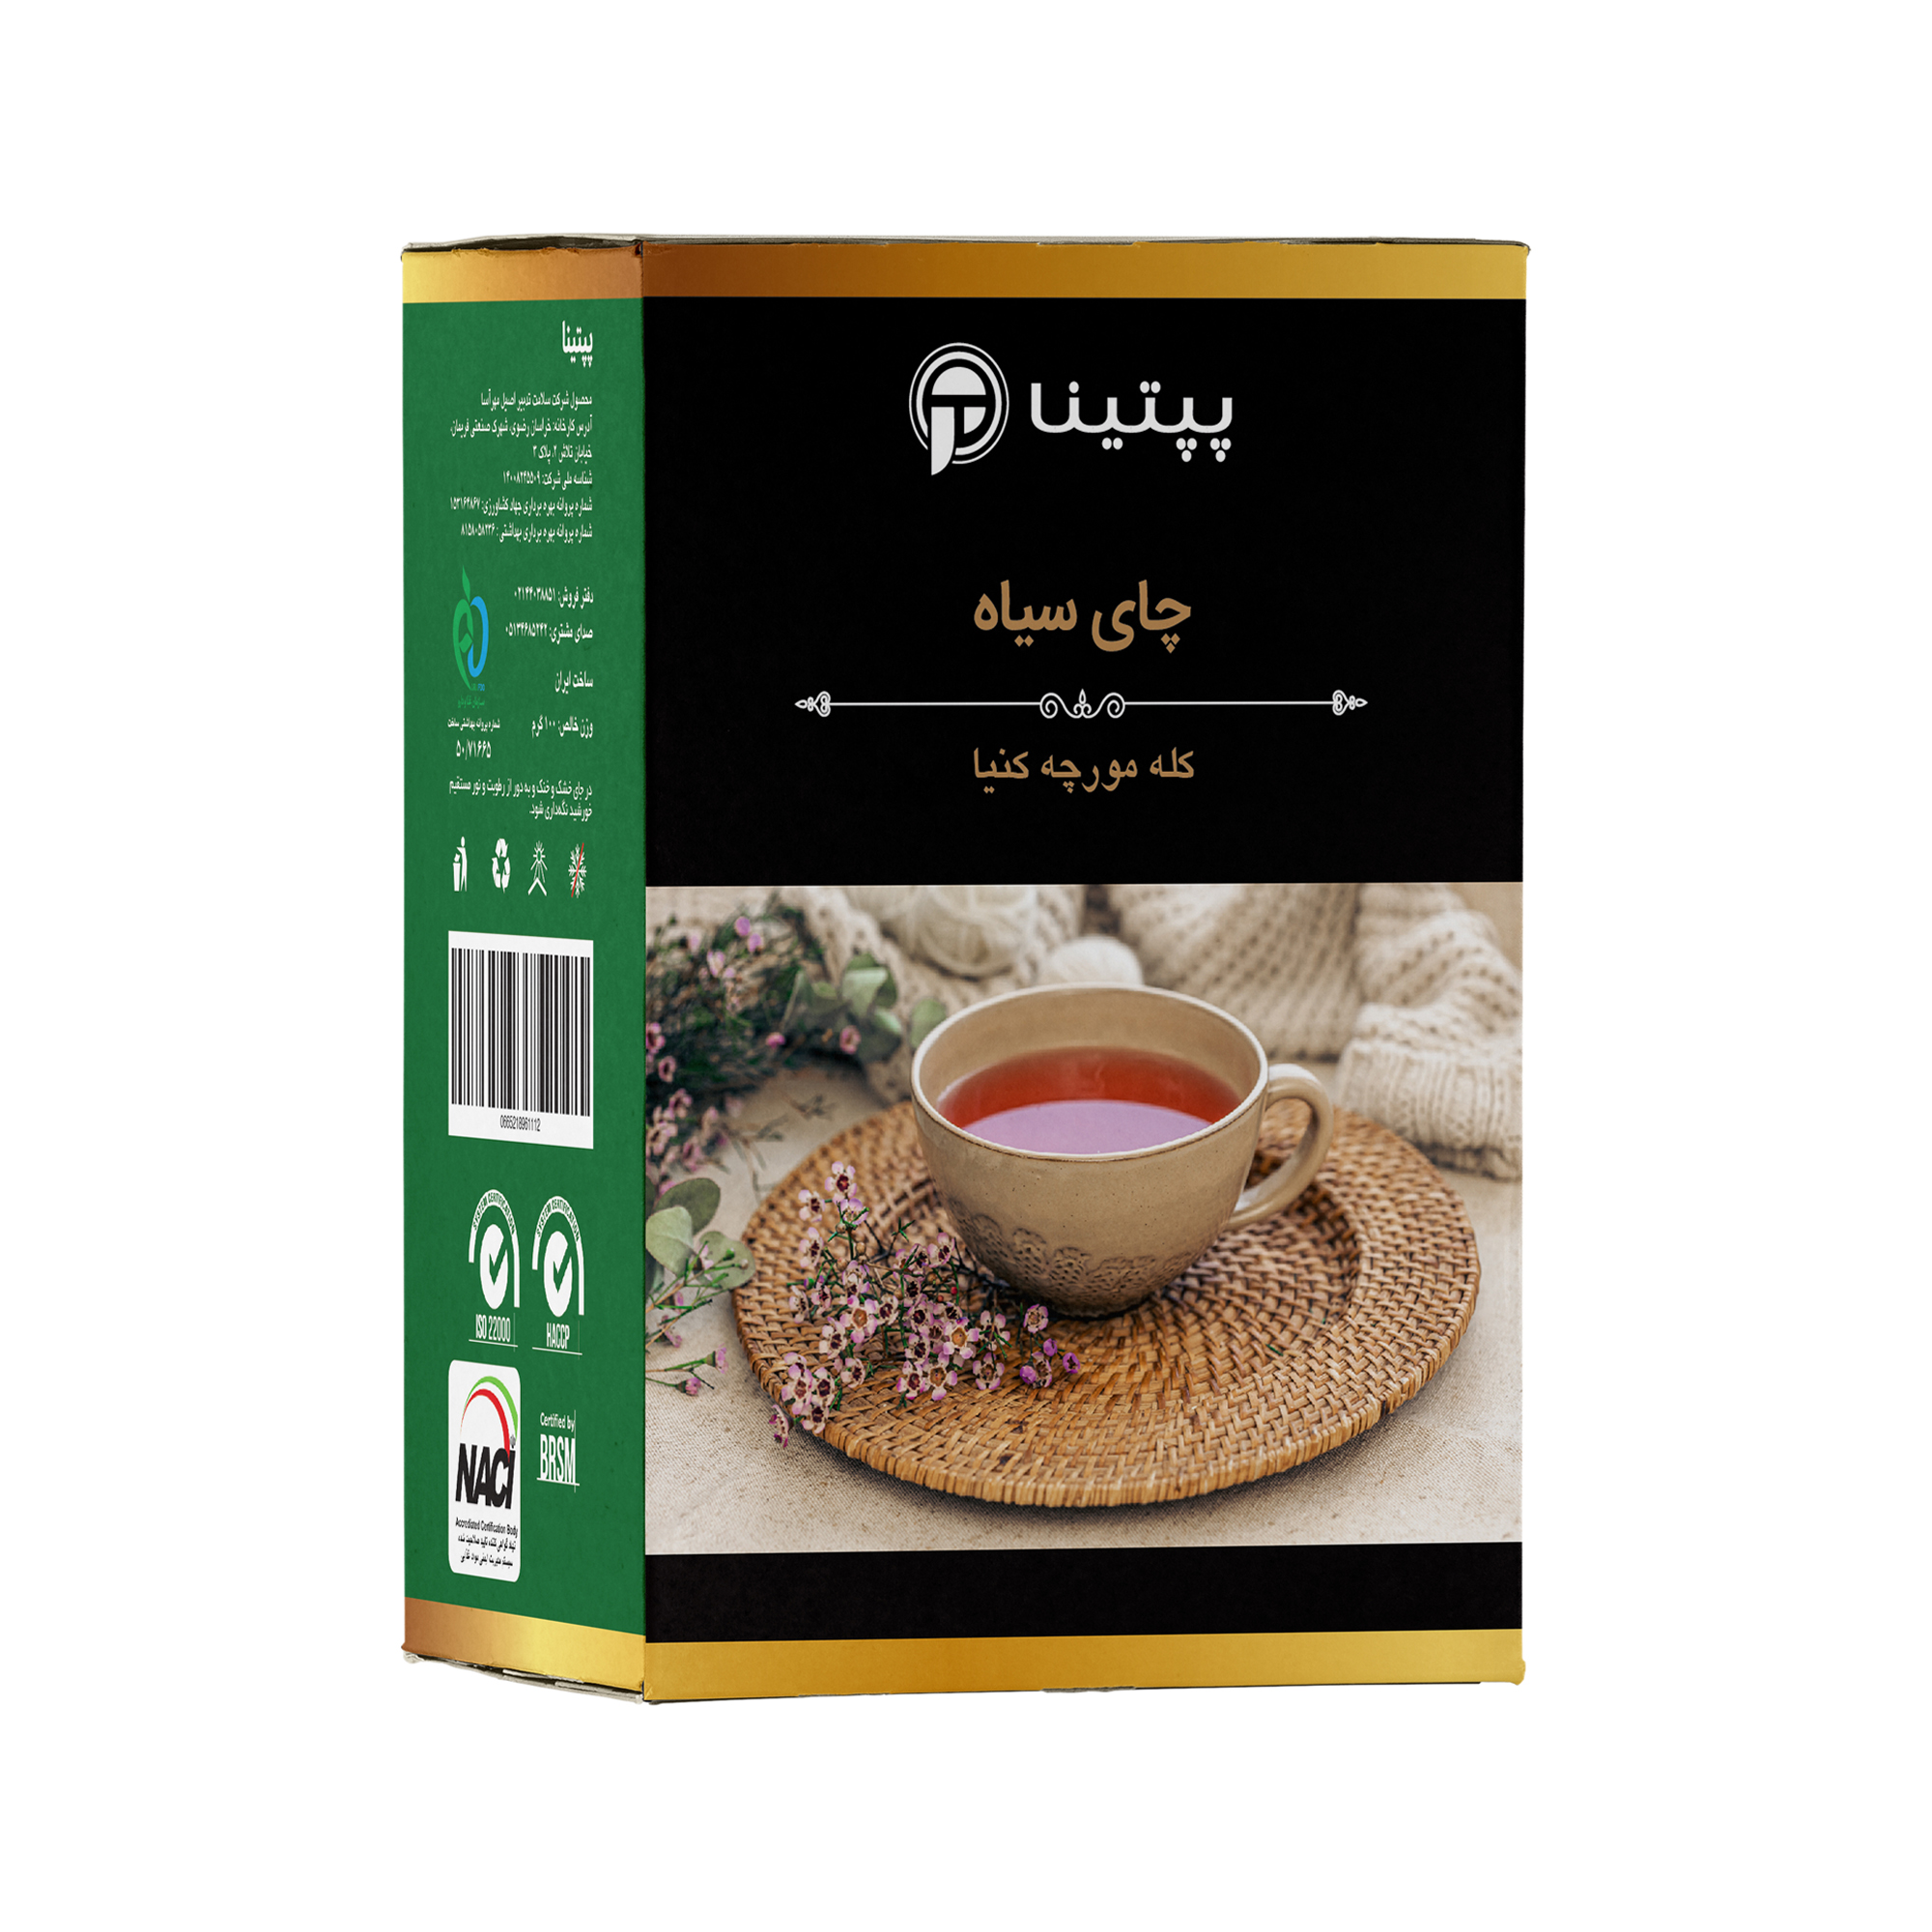 چای سیاه CTC کله مورچه کنیا پپتینا - 200 گرم